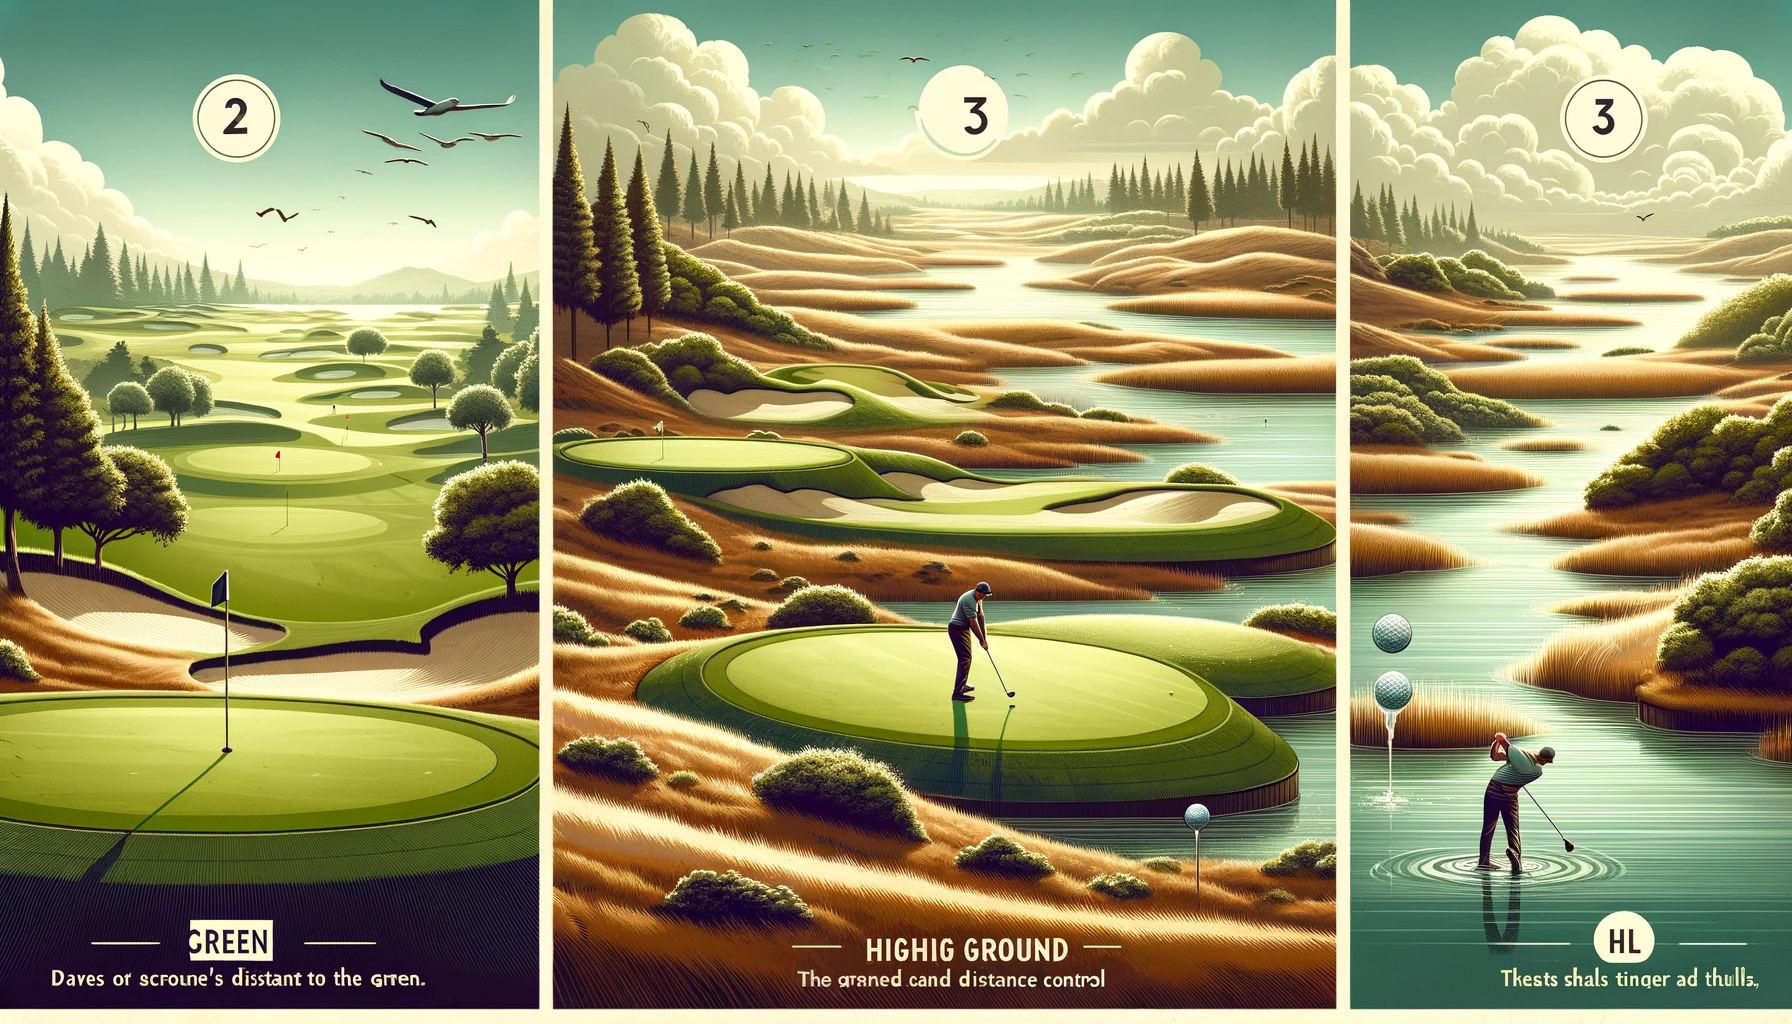 골프 코스의 지형 다양성과 스윙 전략&#44; 골프 지형 분석 - 평지&#44; 언덕과 고지대&#44; 물험지